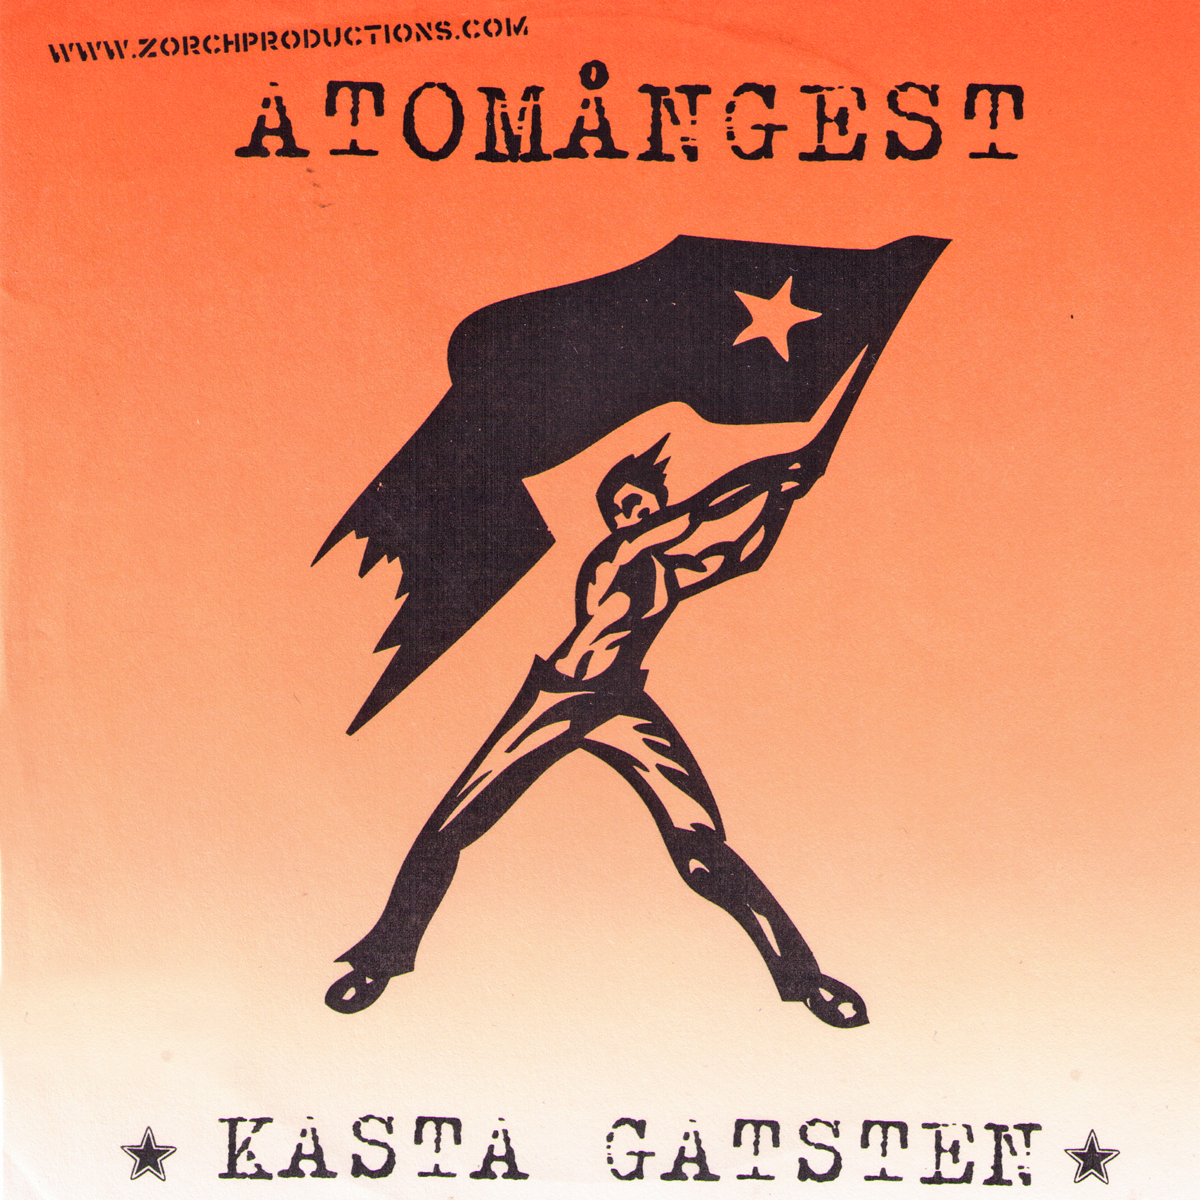 Atomangest- Kasta Gatsten 7” ~EX THE HIVES!